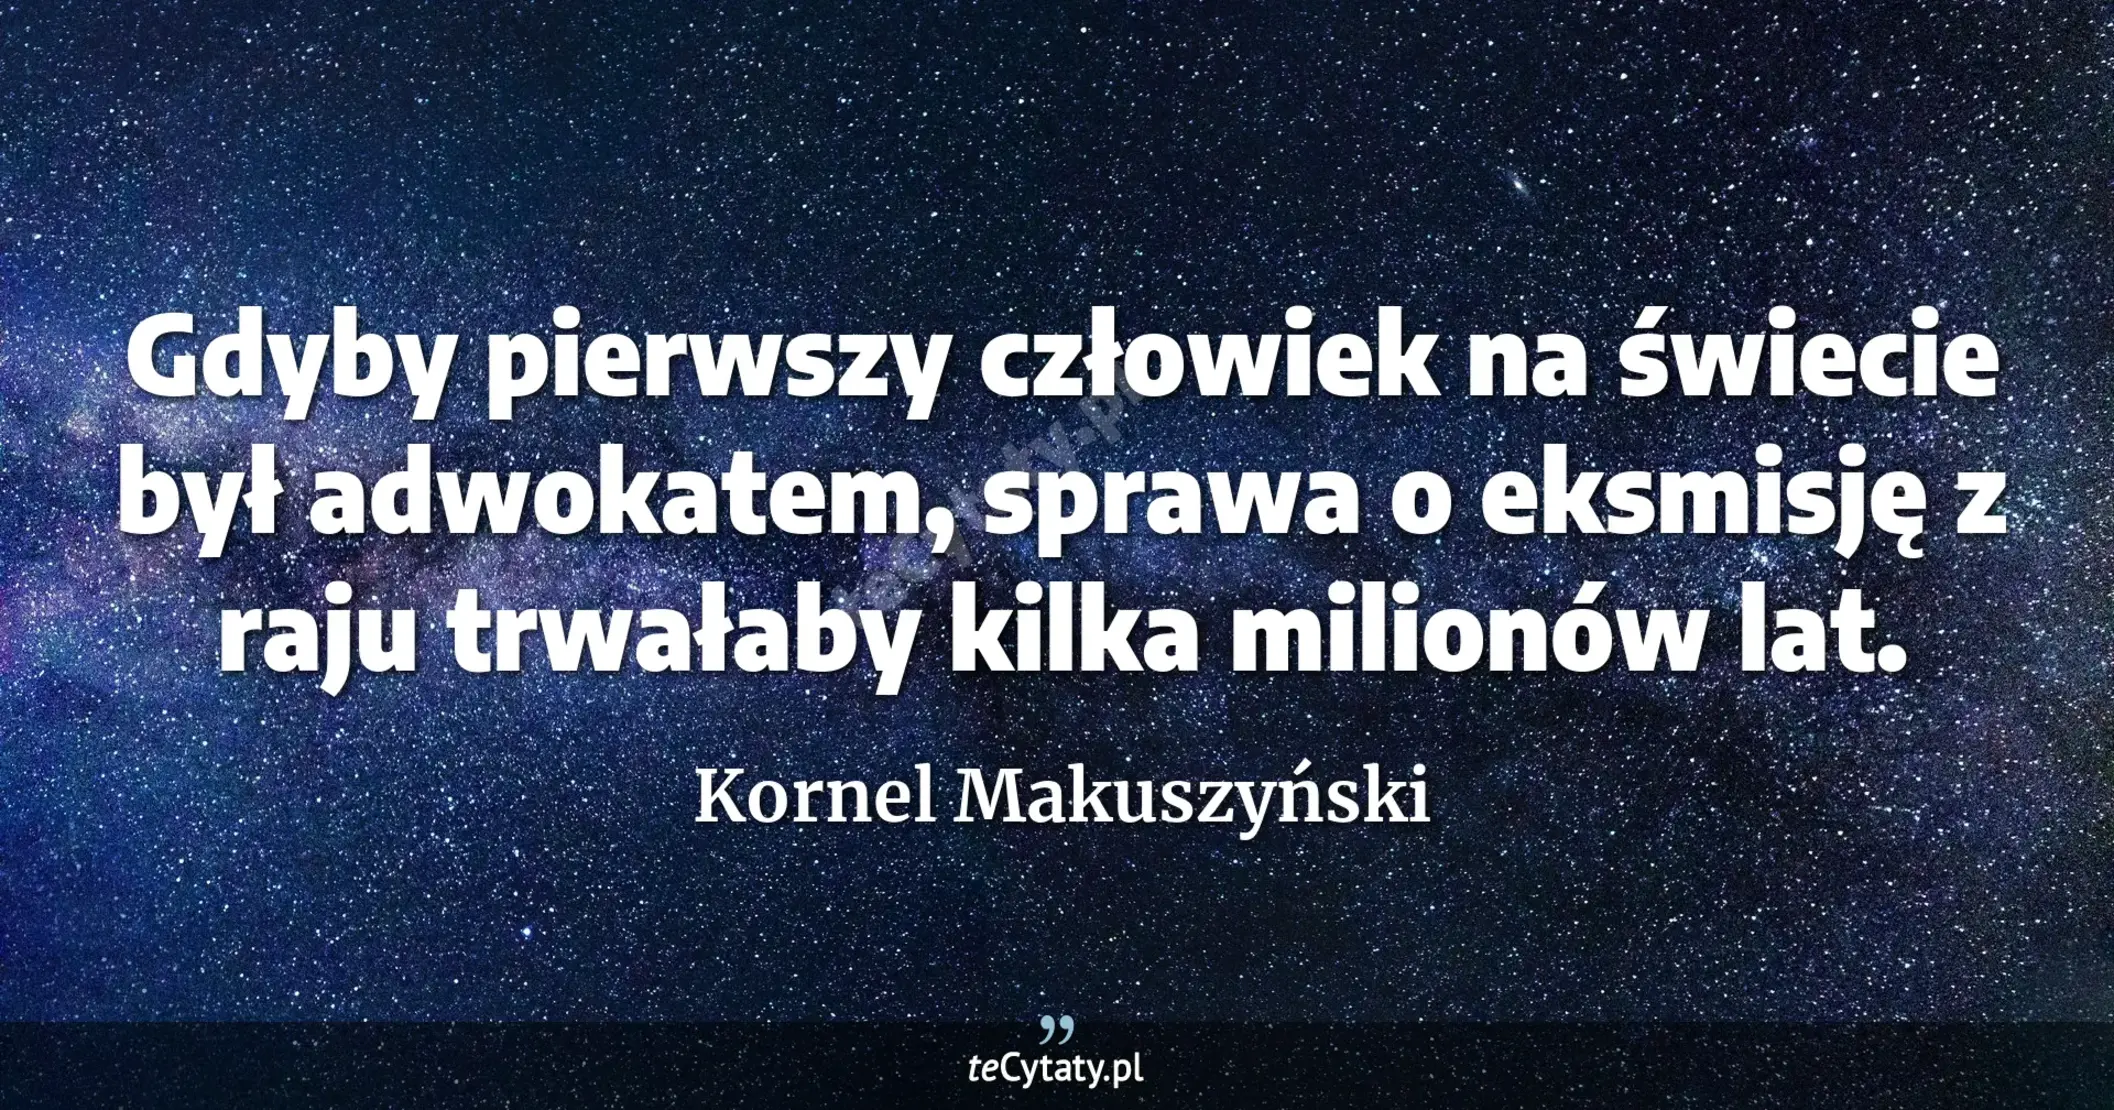 Gdyby pierwszy człowiek na świecie był adwokatem, sprawa o eksmisję z raju trwałaby kilka milionów lat. - Kornel Makuszyński